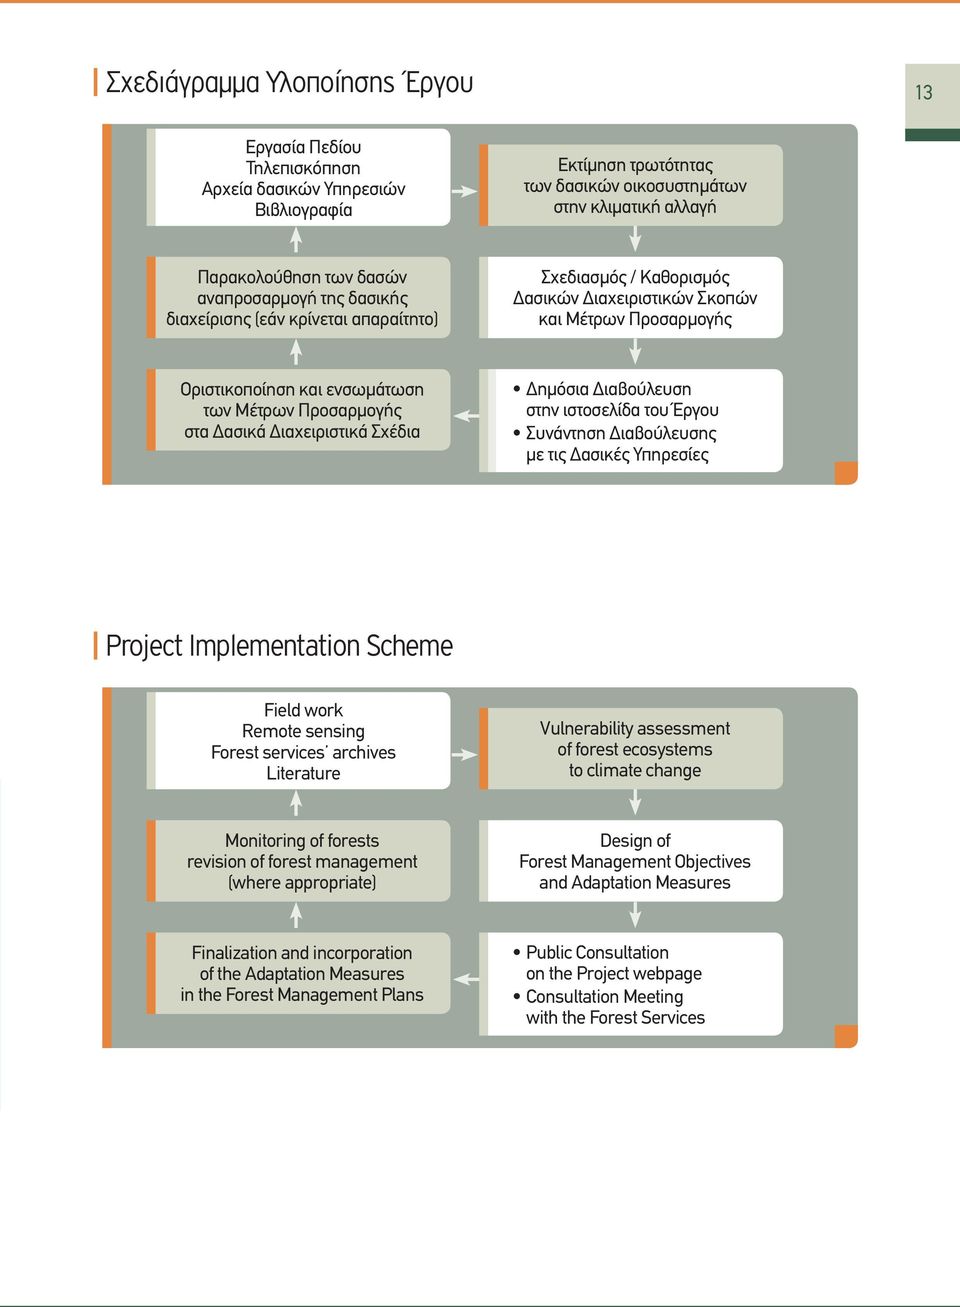 Δασικά Διαχειριστικά Σχέδια Δημόσια Διαβούλευση στην ιστοσελίδα του Έργου Συνάντηση Διαβούλευσης με τις Δασικές Υπηρεσίες Project Implementation Scheme Field work Remote sensing Forest services